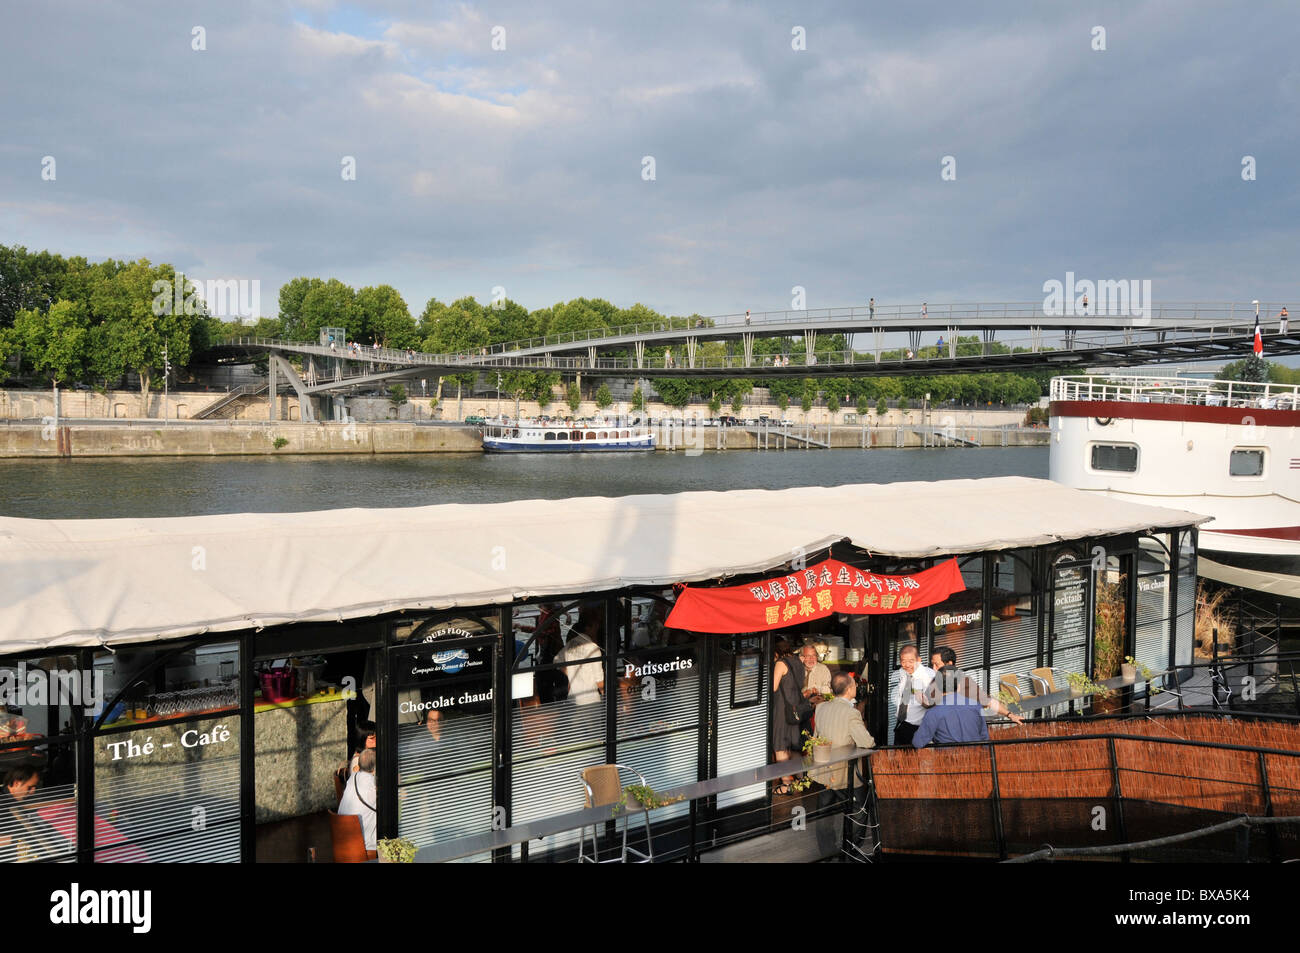 café on barge, Seine river, Simone de Beauvoir bridge, Paris, France Stock Photo